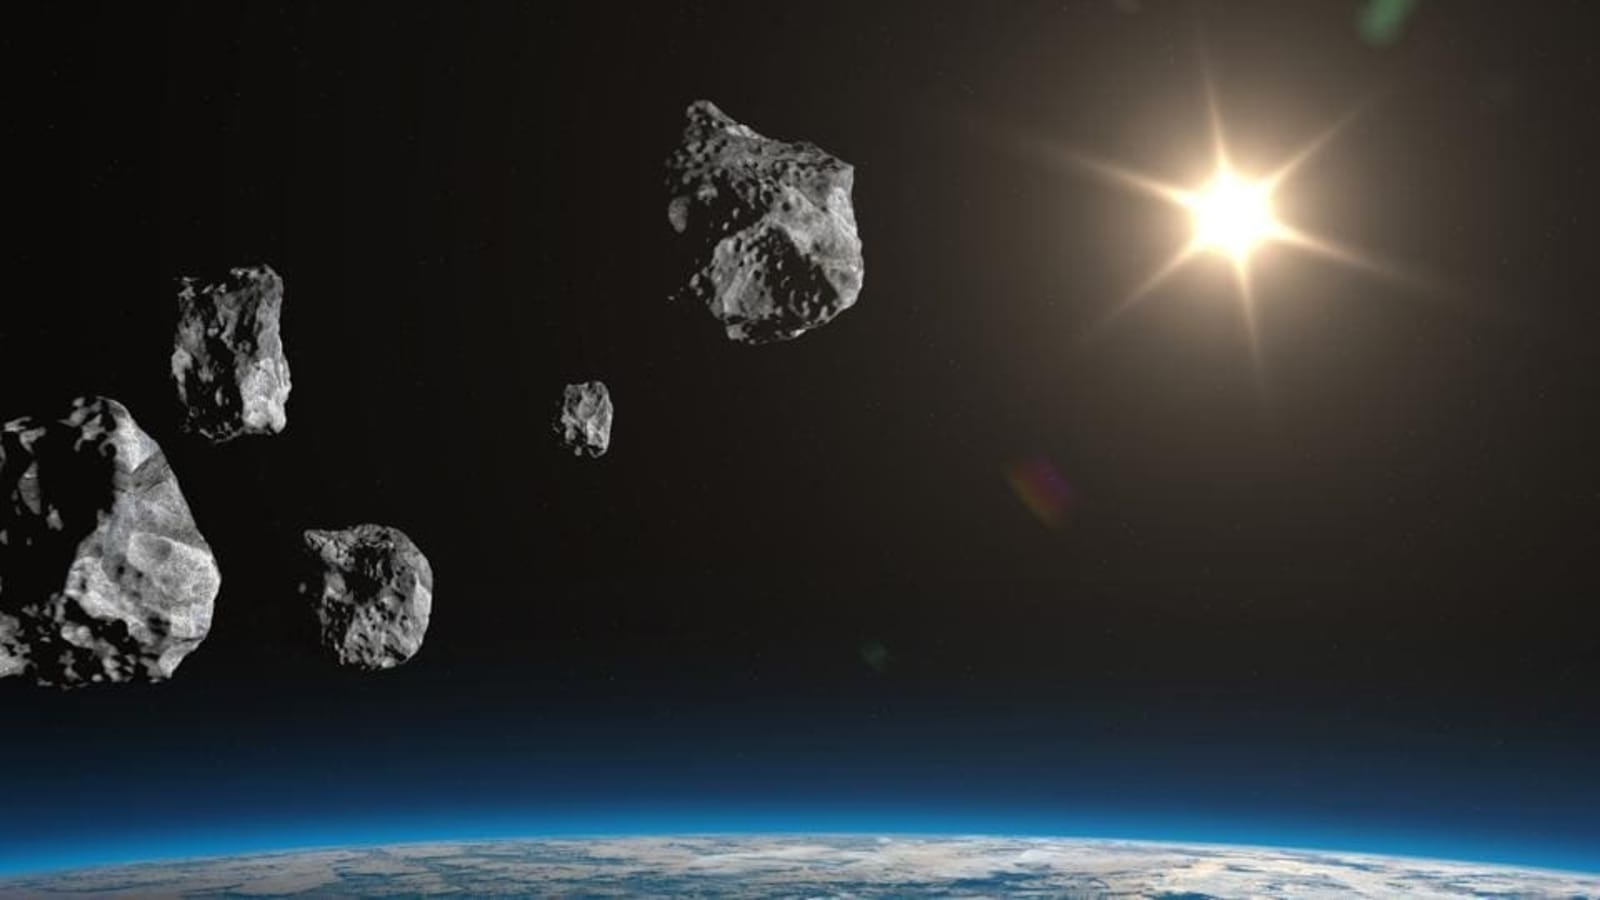 소행성 감시: 휴!  오늘 막 지구 앞에서 발생한 엄청난 파괴력을 지닌 소행성